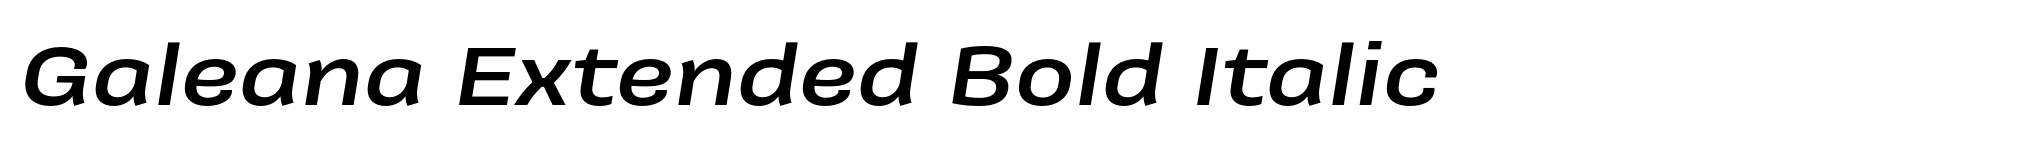 Galeana Extended Bold Italic image